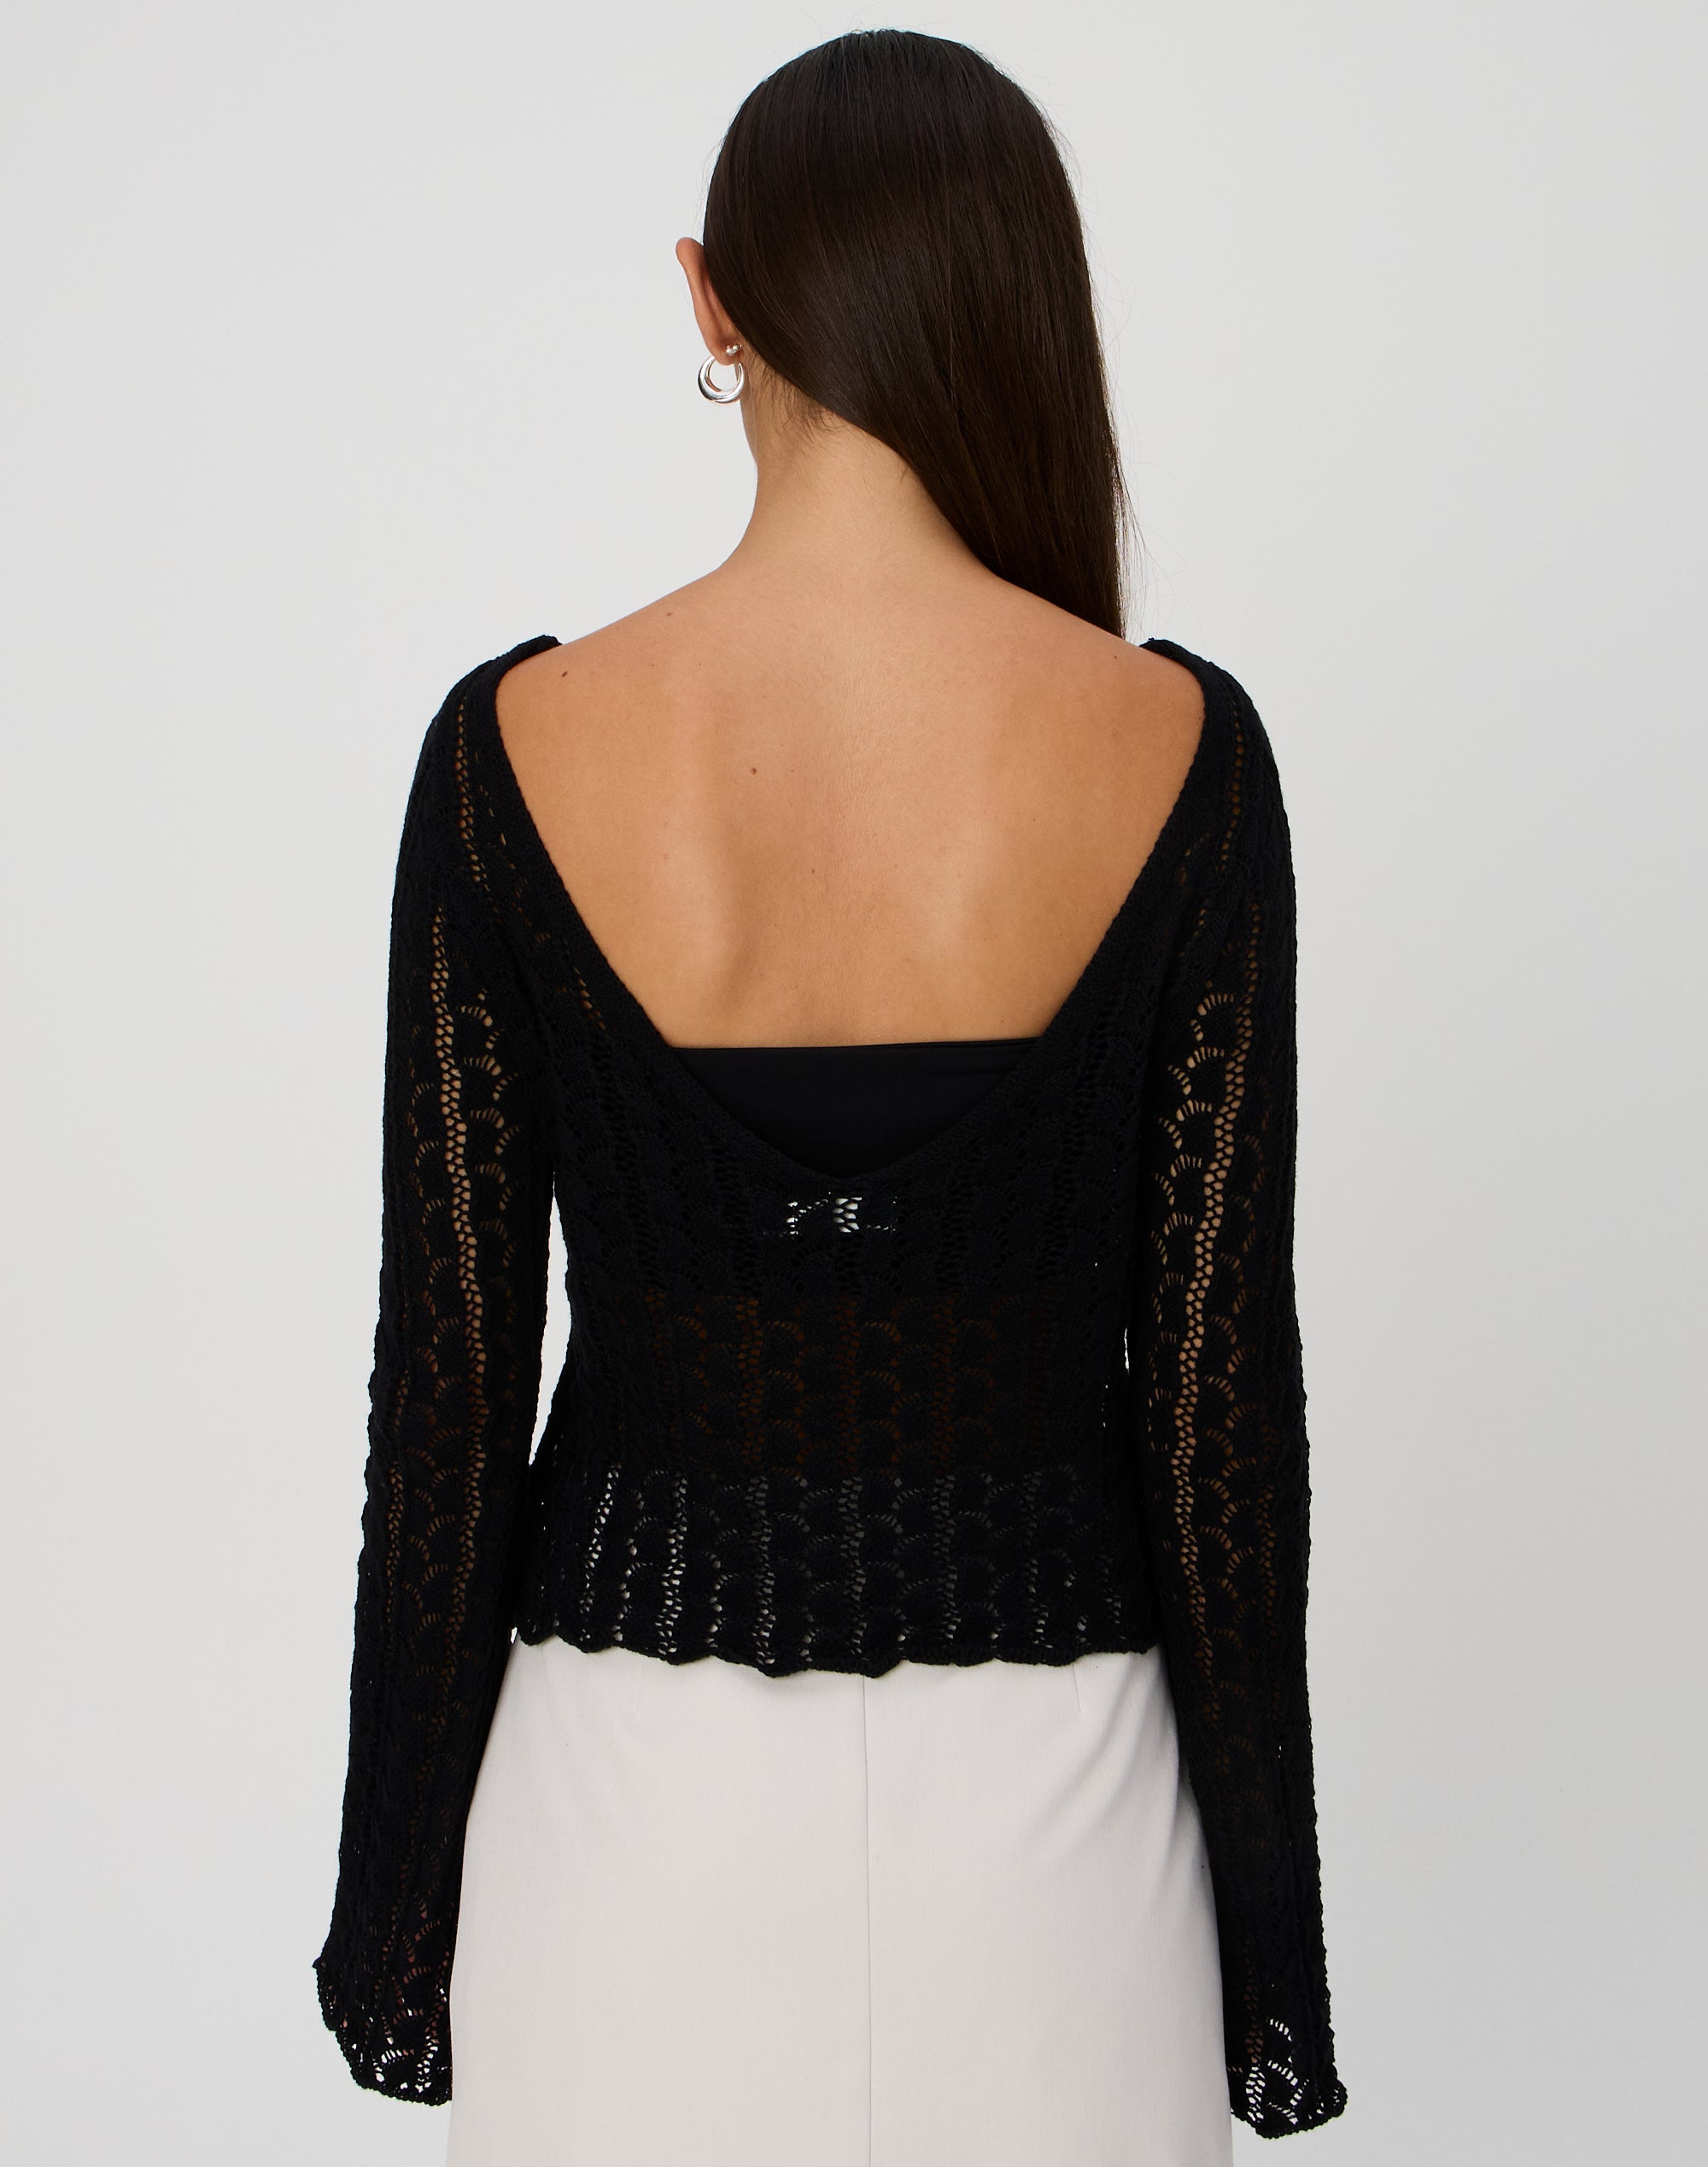 Flare Long Sleeve Crochet Top in Black